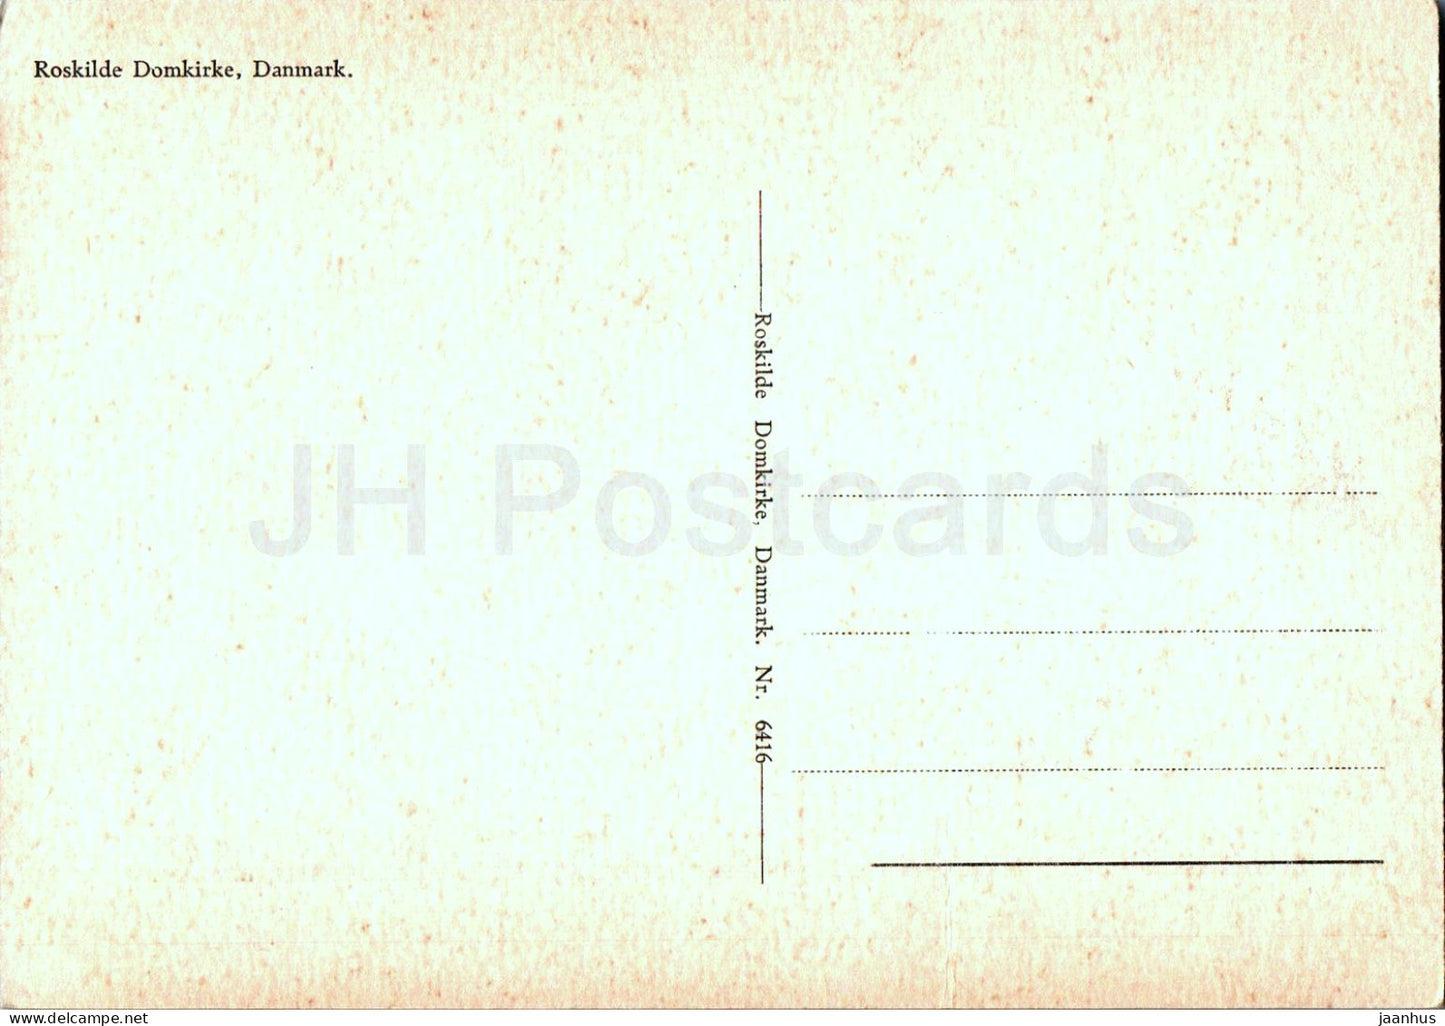 Dom zu Roskilde - Roskilde Domkirke - 6416 - alte Postkarte - Dänemark - unbenutzt 